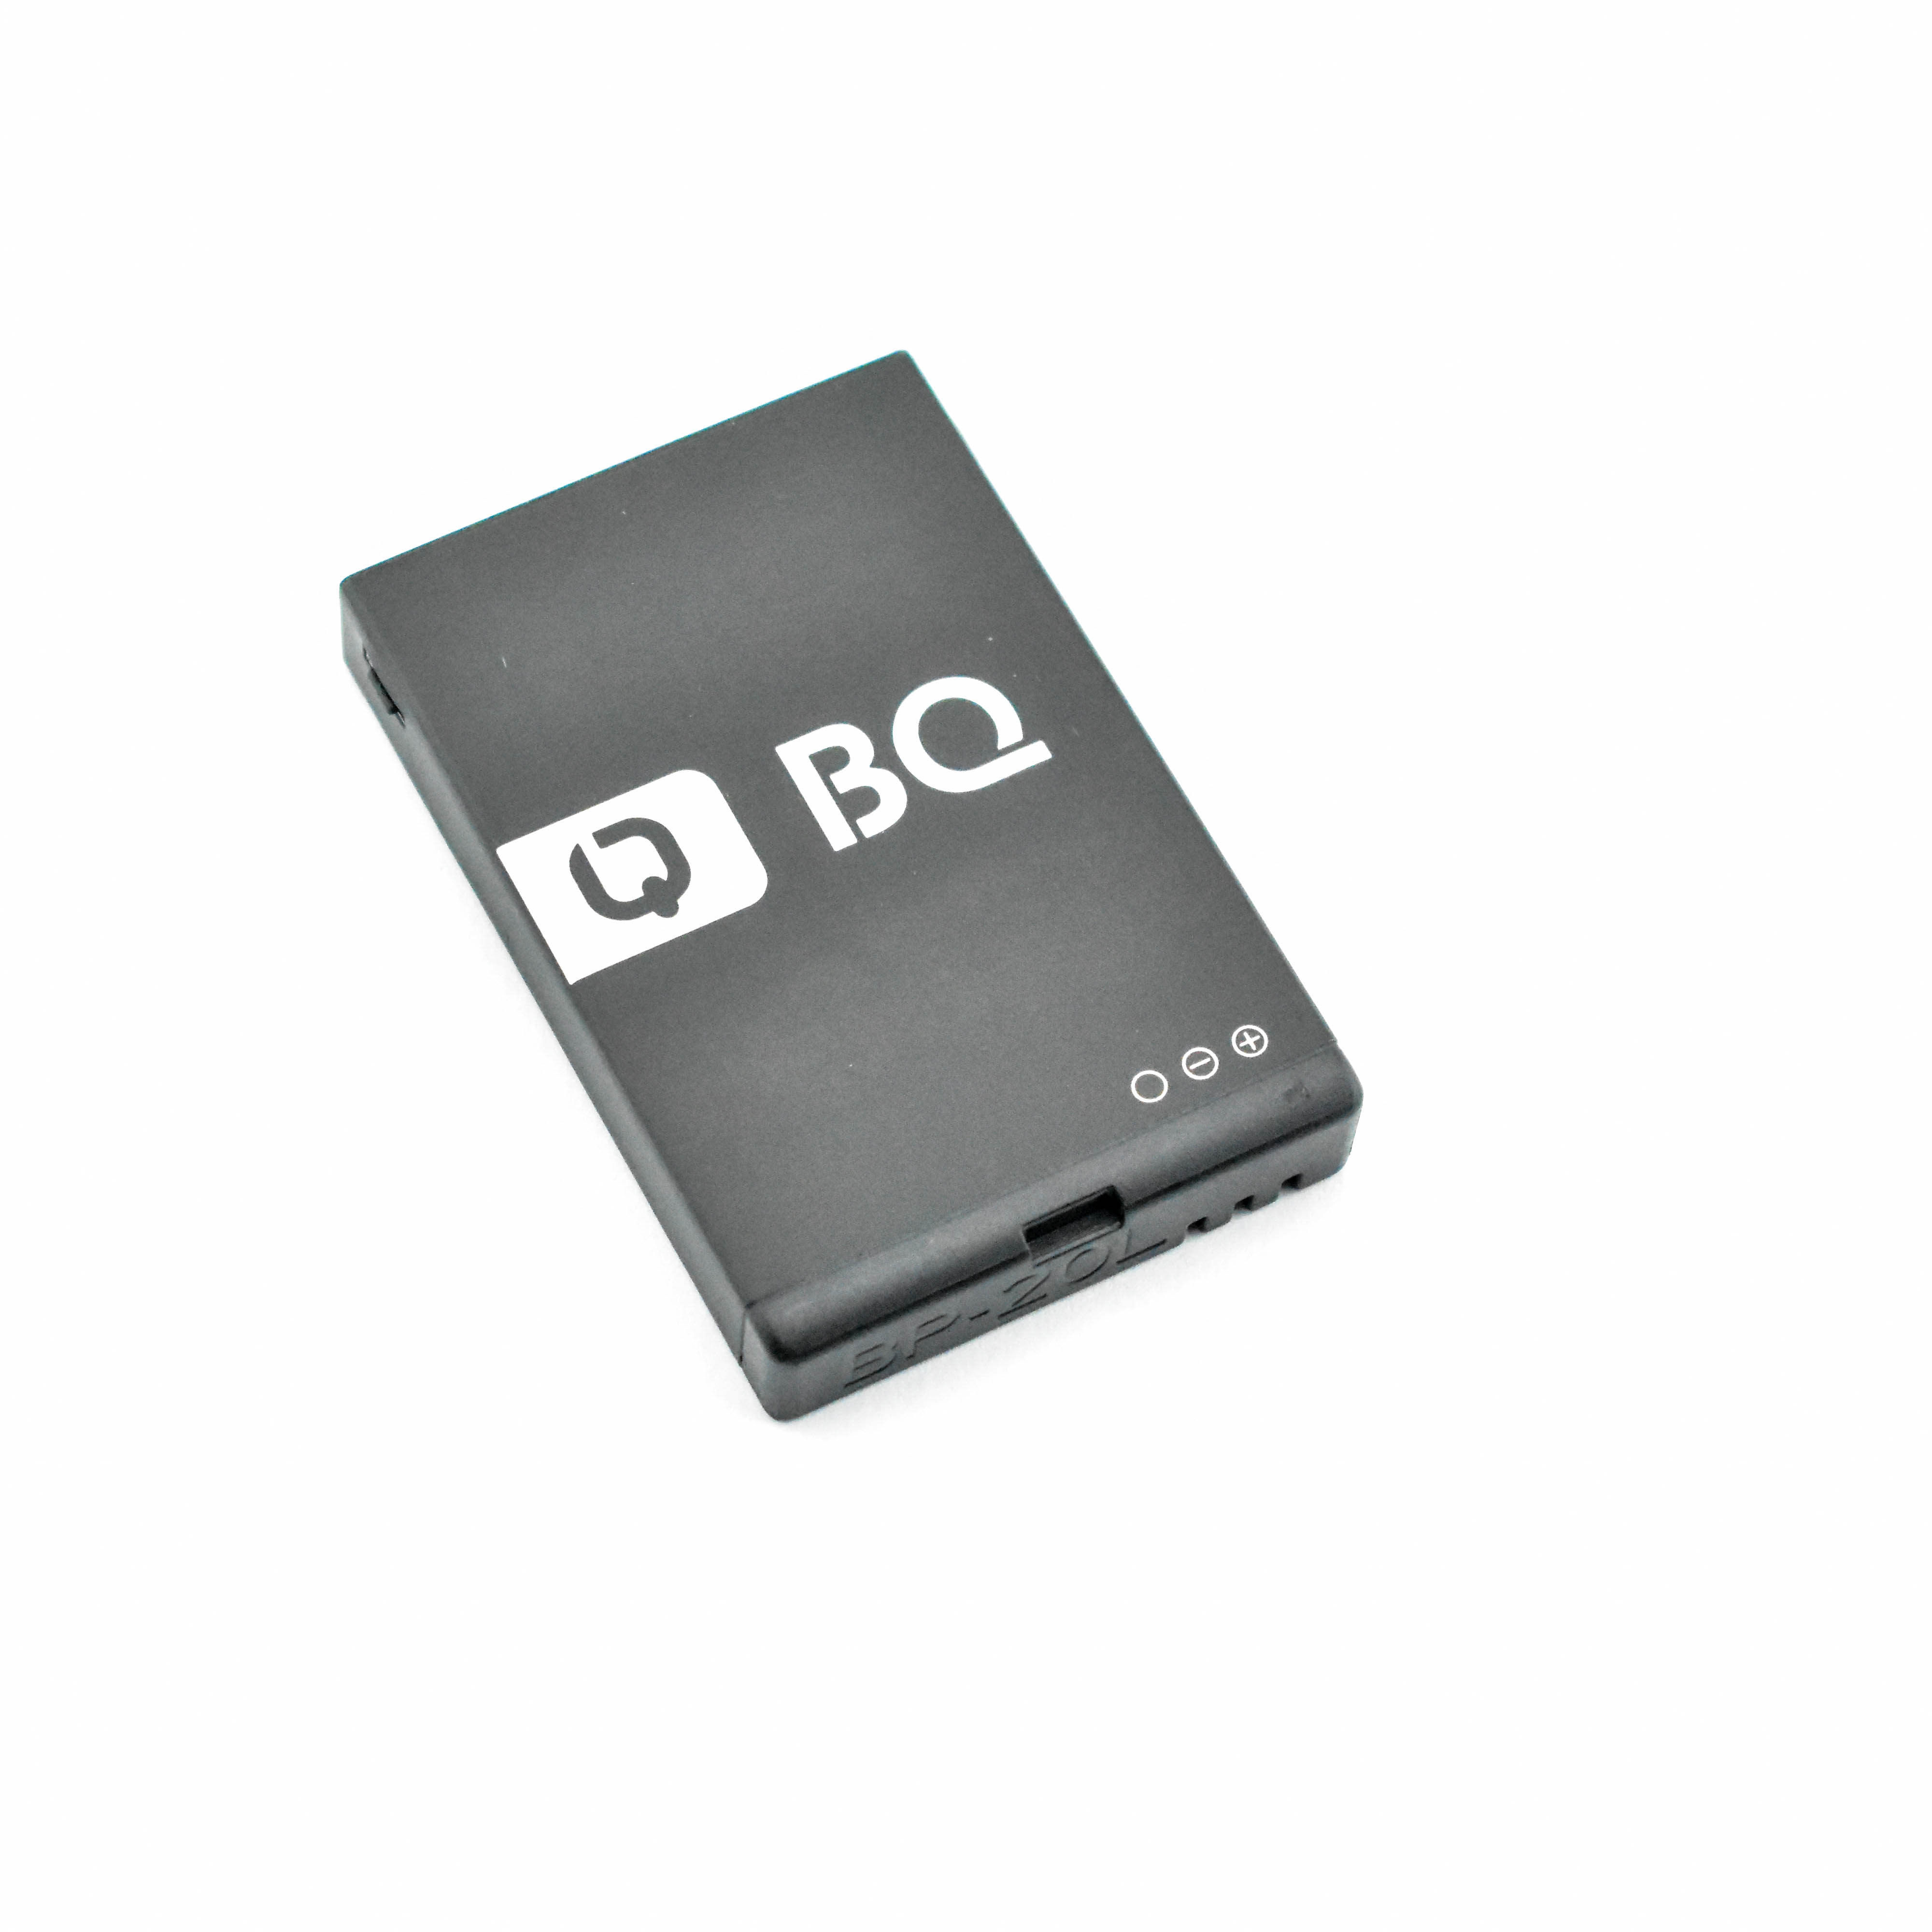 Сотовый телефон аккумулятор купить. Аккумулятор для BQ-1807 Step+. BQ-2810 Boom XL аккумулятор. BQ 2810 аккумулятор. BQ 2805 Boom XL аккумулятор.